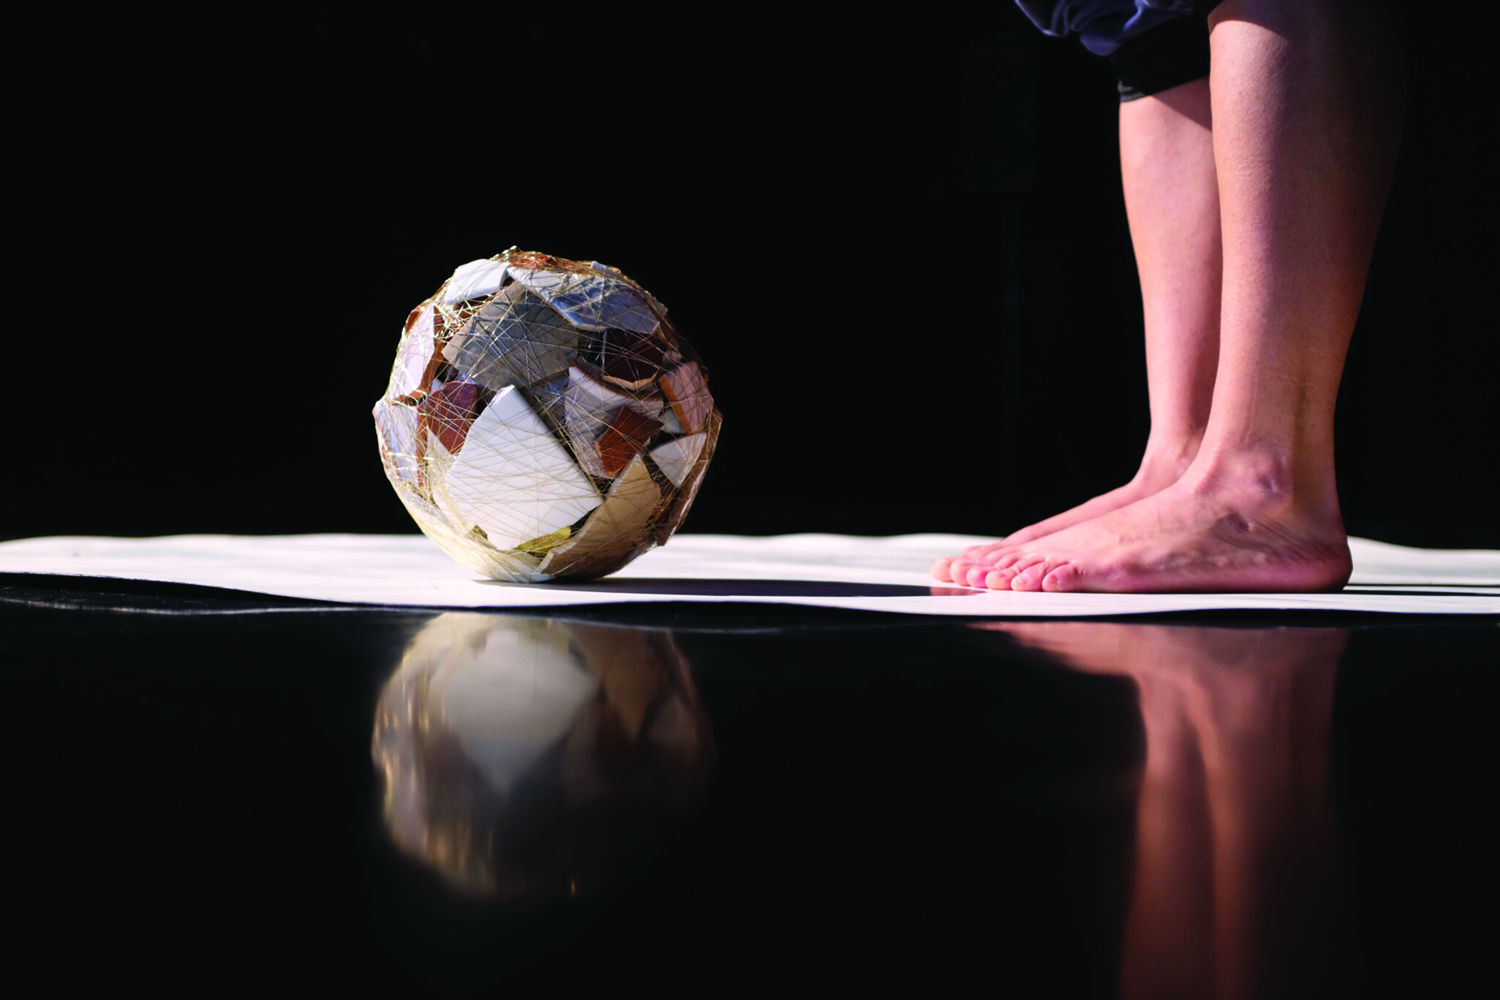 Sur fond noir, des morceaux de vaisselle ficelés forment une boule posée sur un tapis blanc face aux pieds nus d’un artiste